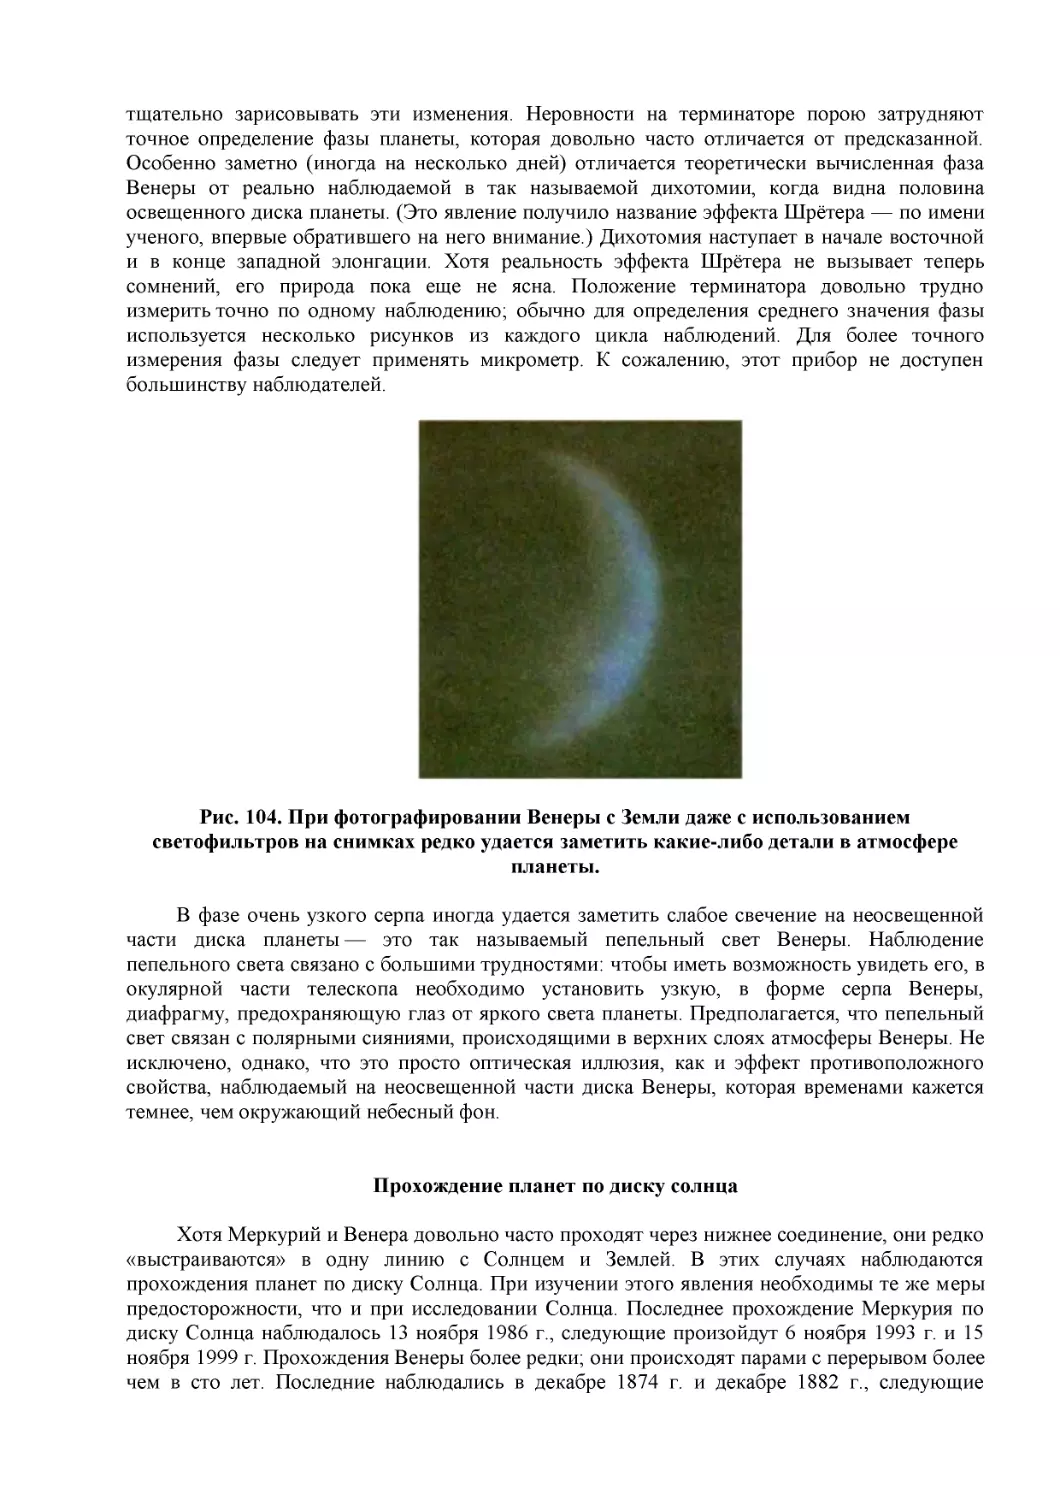 Рис. 104. При фотографировании Венеры с Земли даже с использованием светофильтров на снимках редко удается заметить какие-либо детали в атмосфере планеты.
Прохождение планет по диску солнца